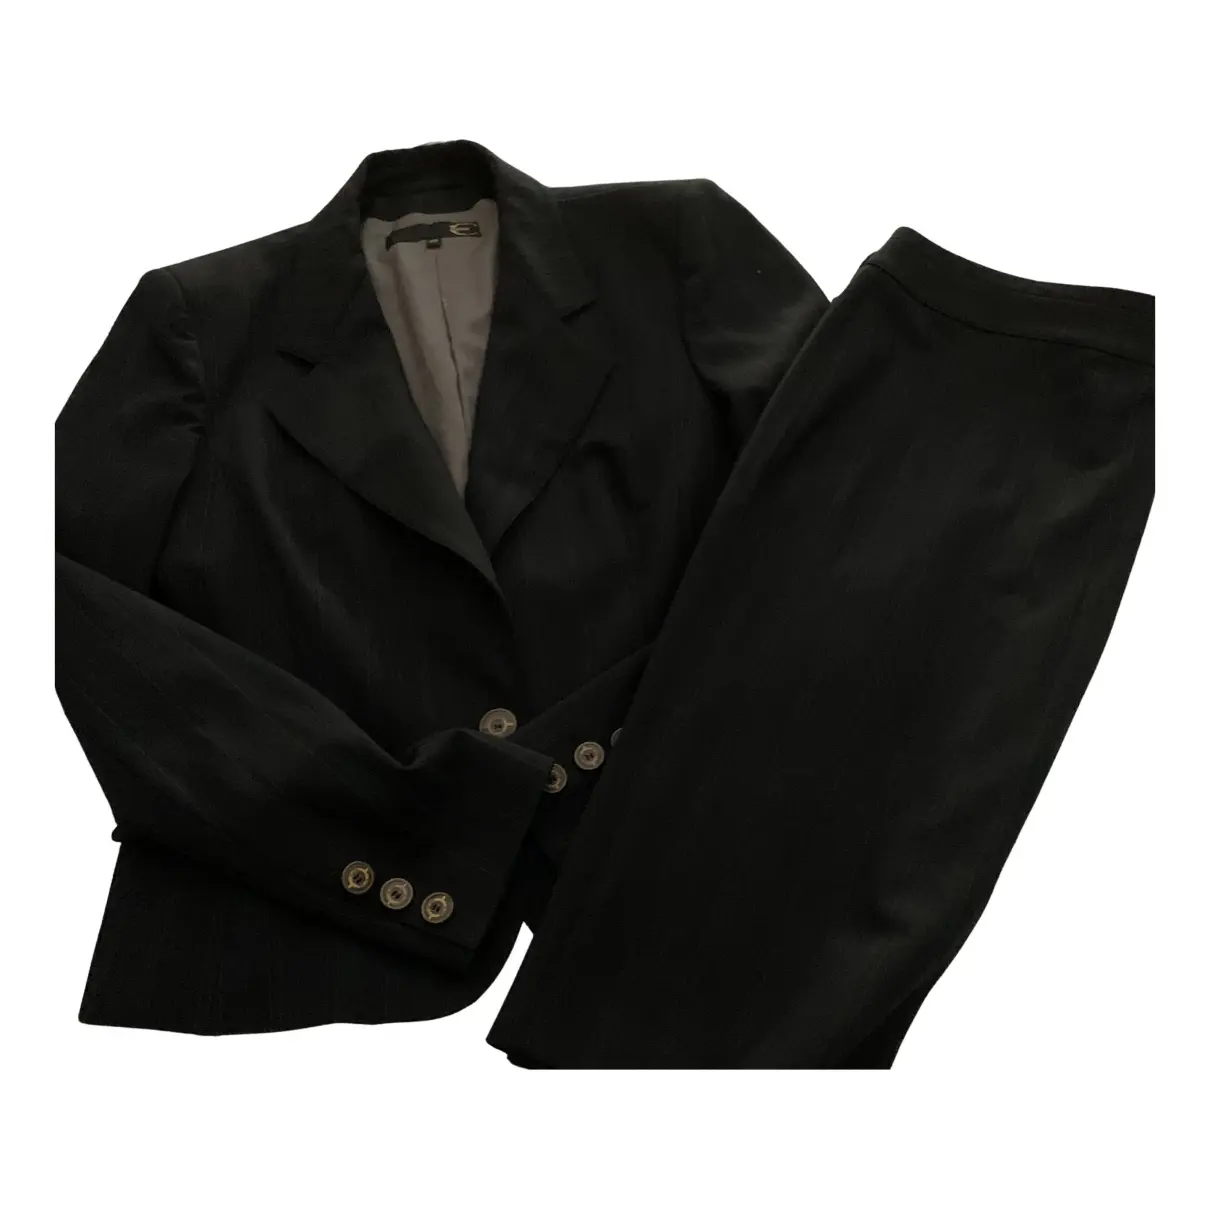 Wool suit jacket Just Cavalli - Vintage